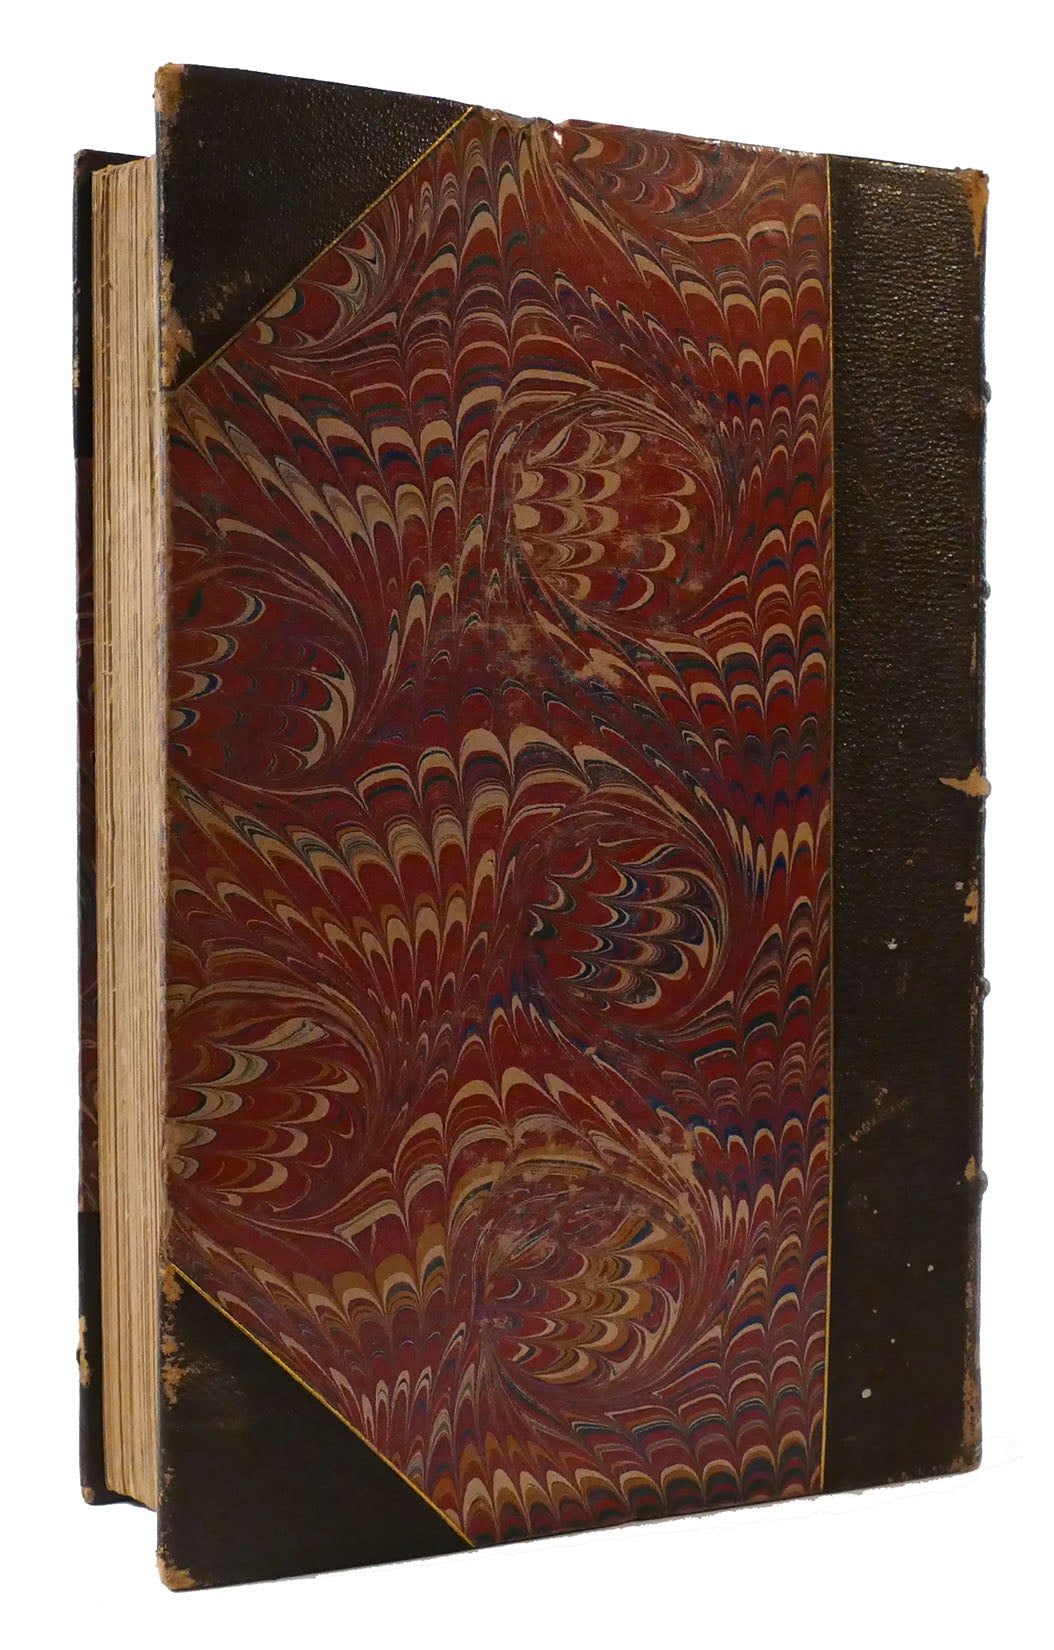 Set of 24 Antique Books, Sir Walter Scott, Waverley Novels C